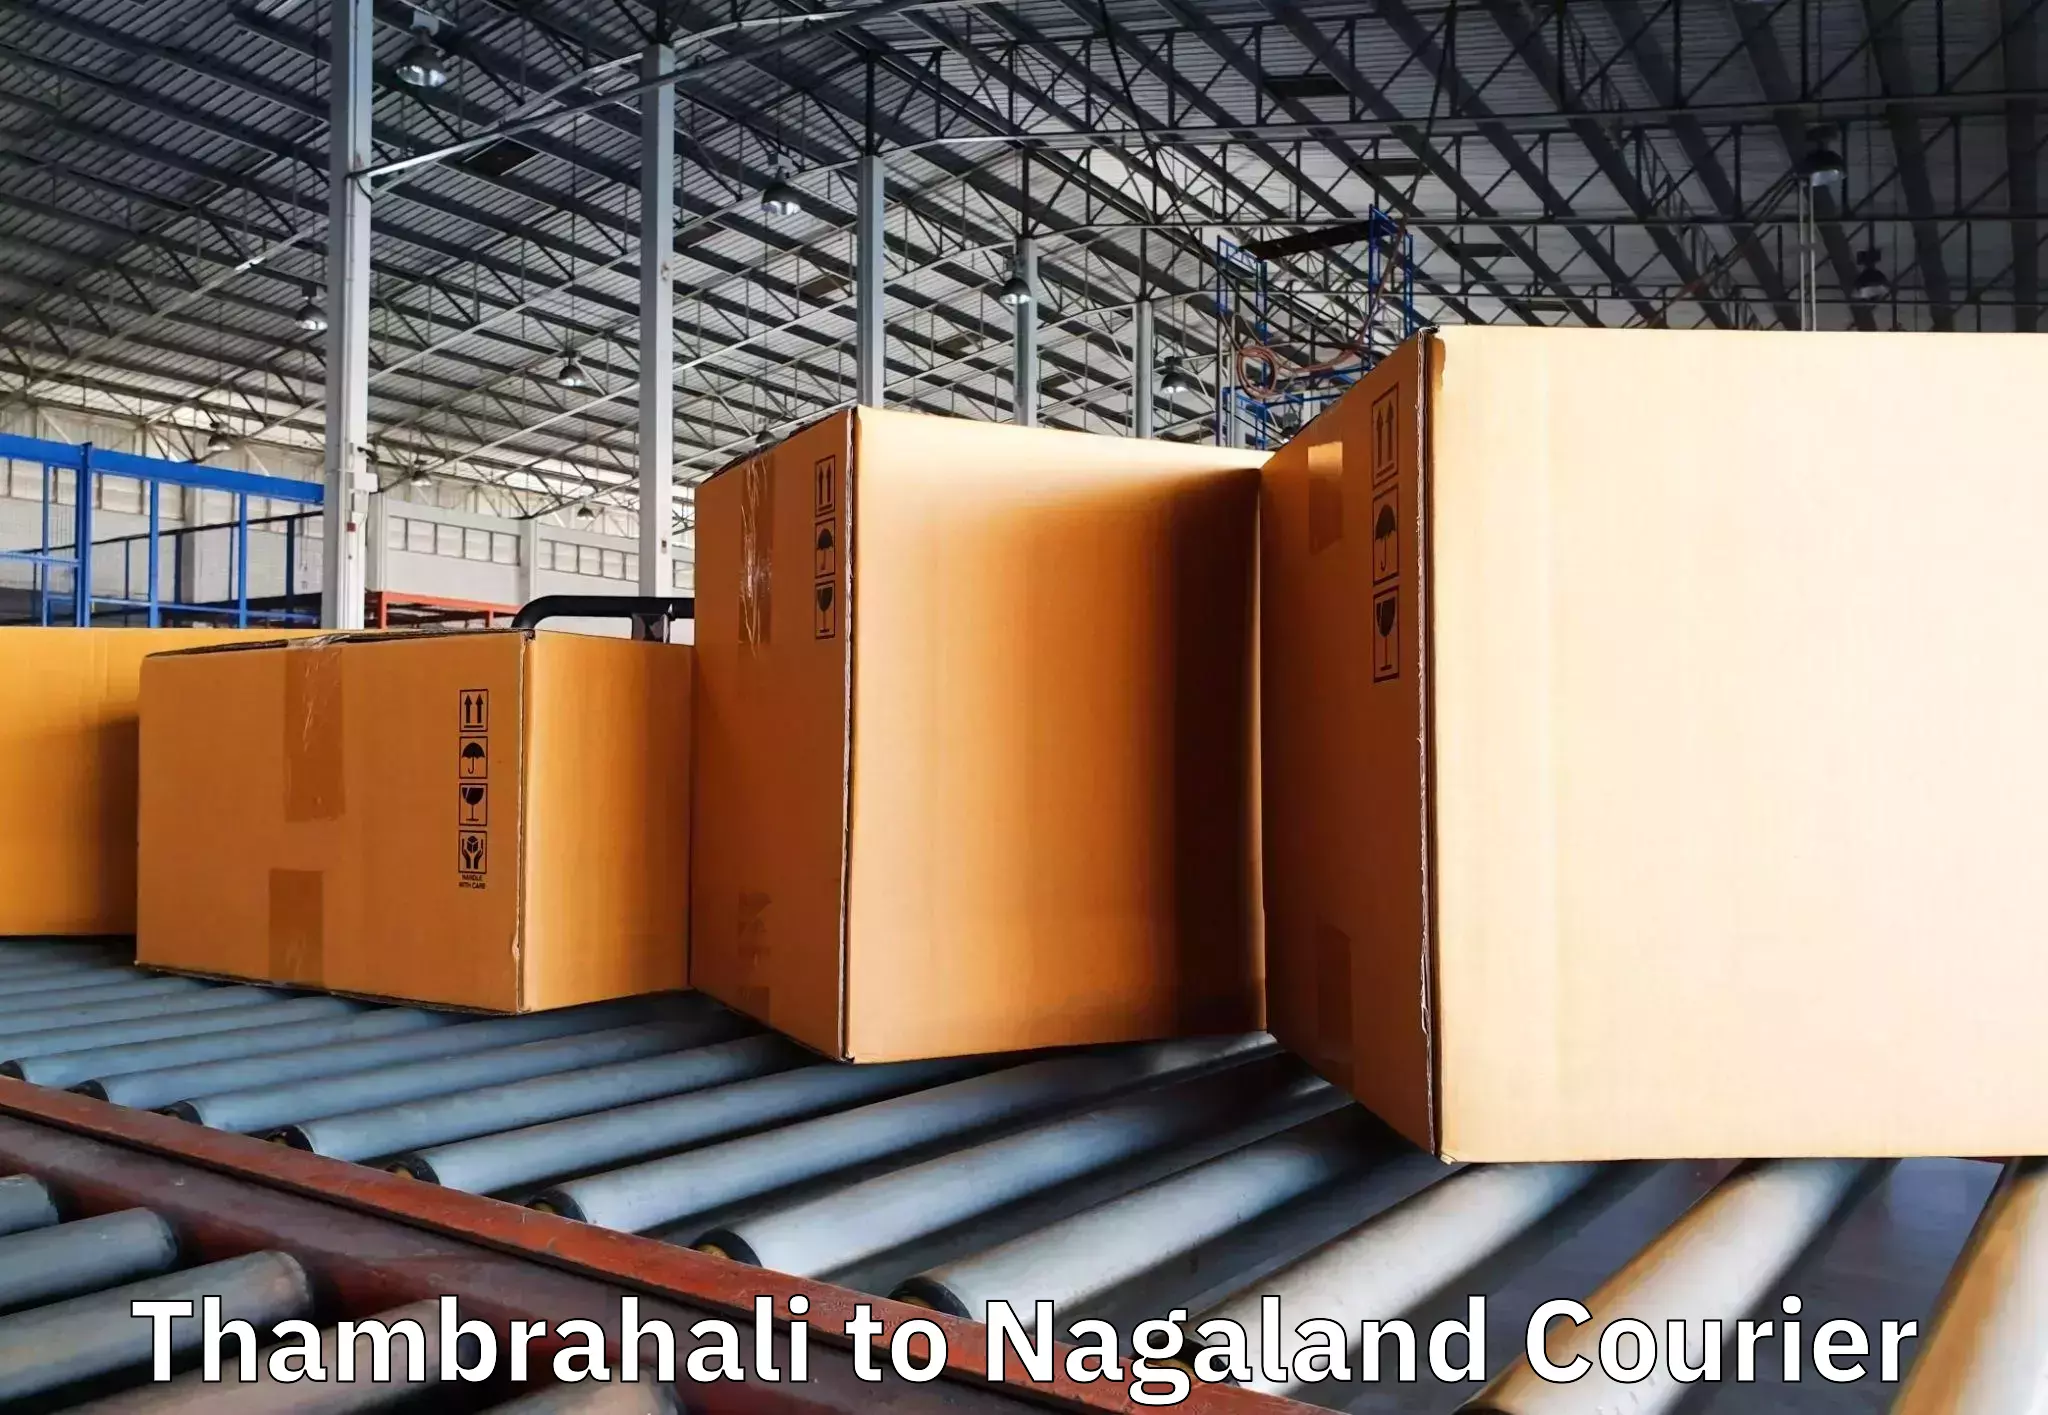 Trusted moving company Thambrahali to Nagaland